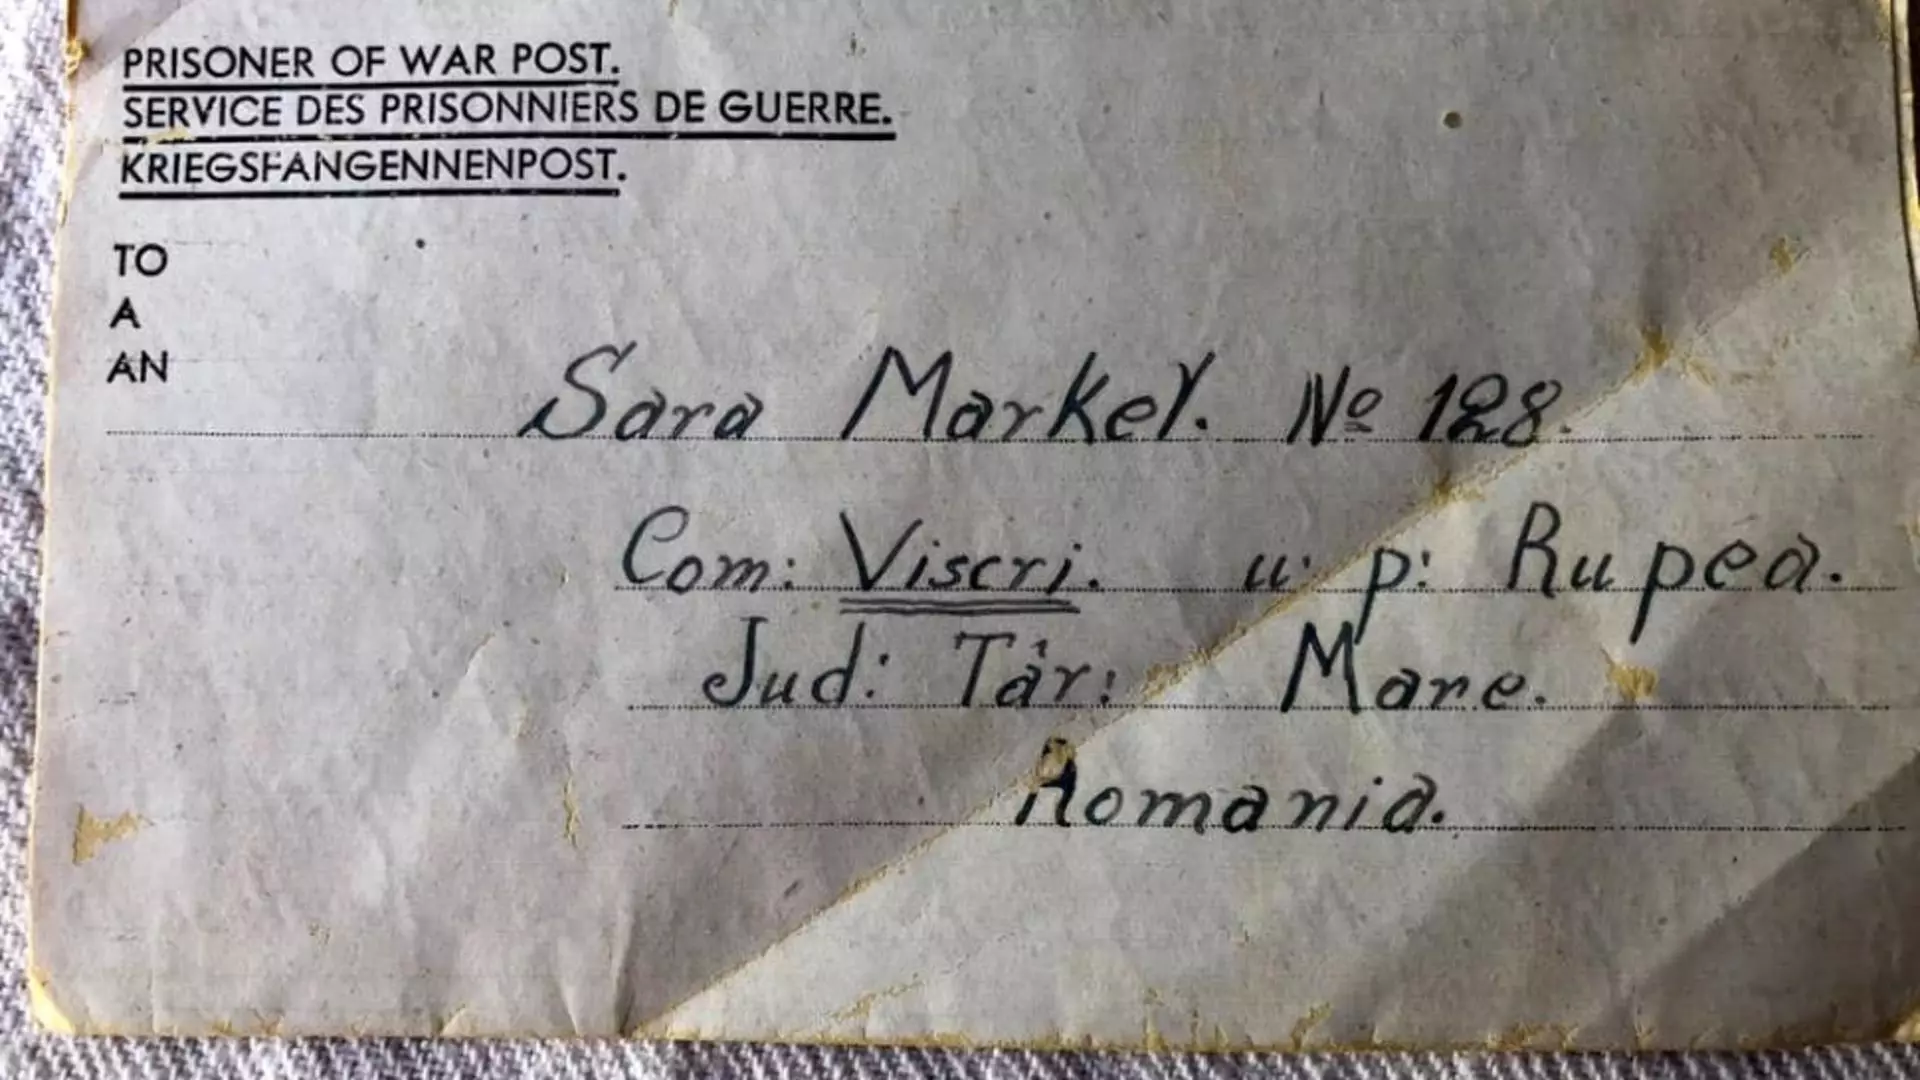 Poșta Română a livrat o scrisoare la 76 de ani după expediere. Foto: Facebook/Csiki Camelia